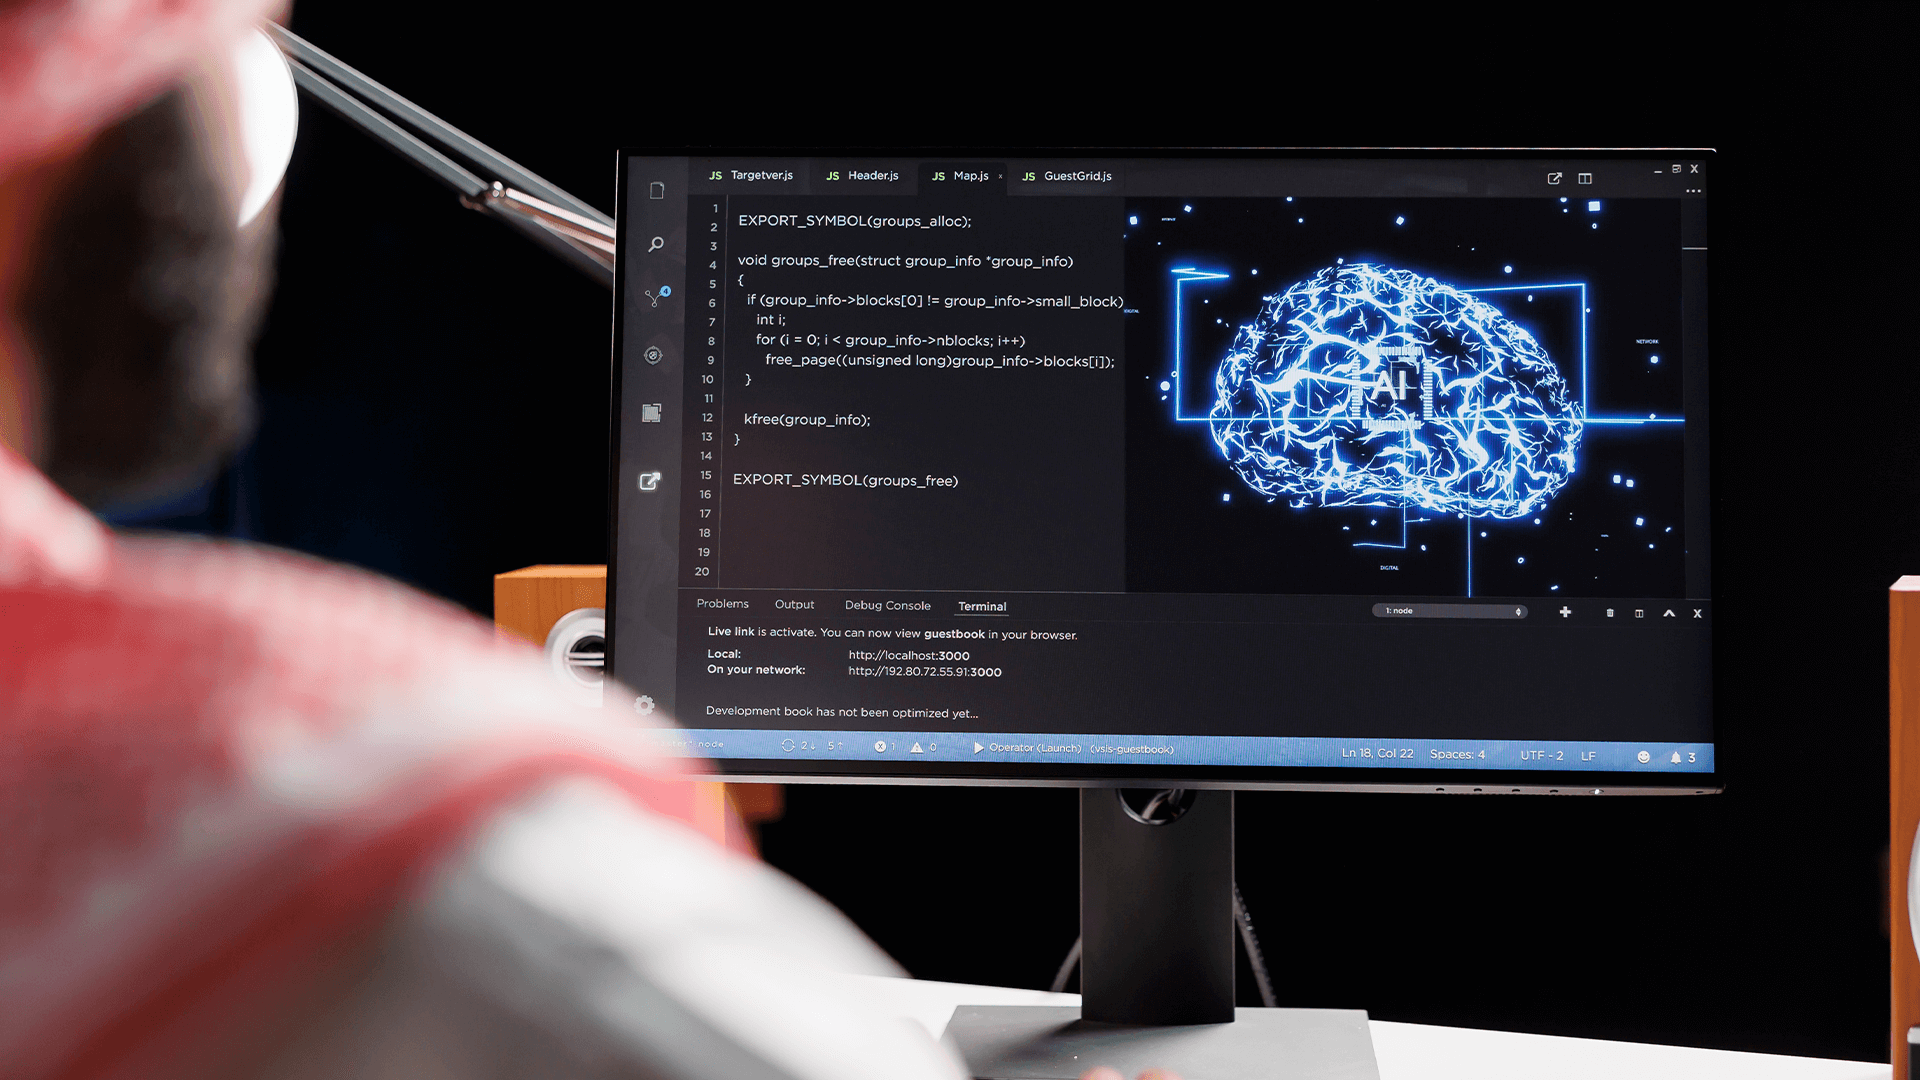 Computador com imagem de cérebro no fundo com sigla "AI", que significa o universo da inteligência artificial, deep learning e machine learning.